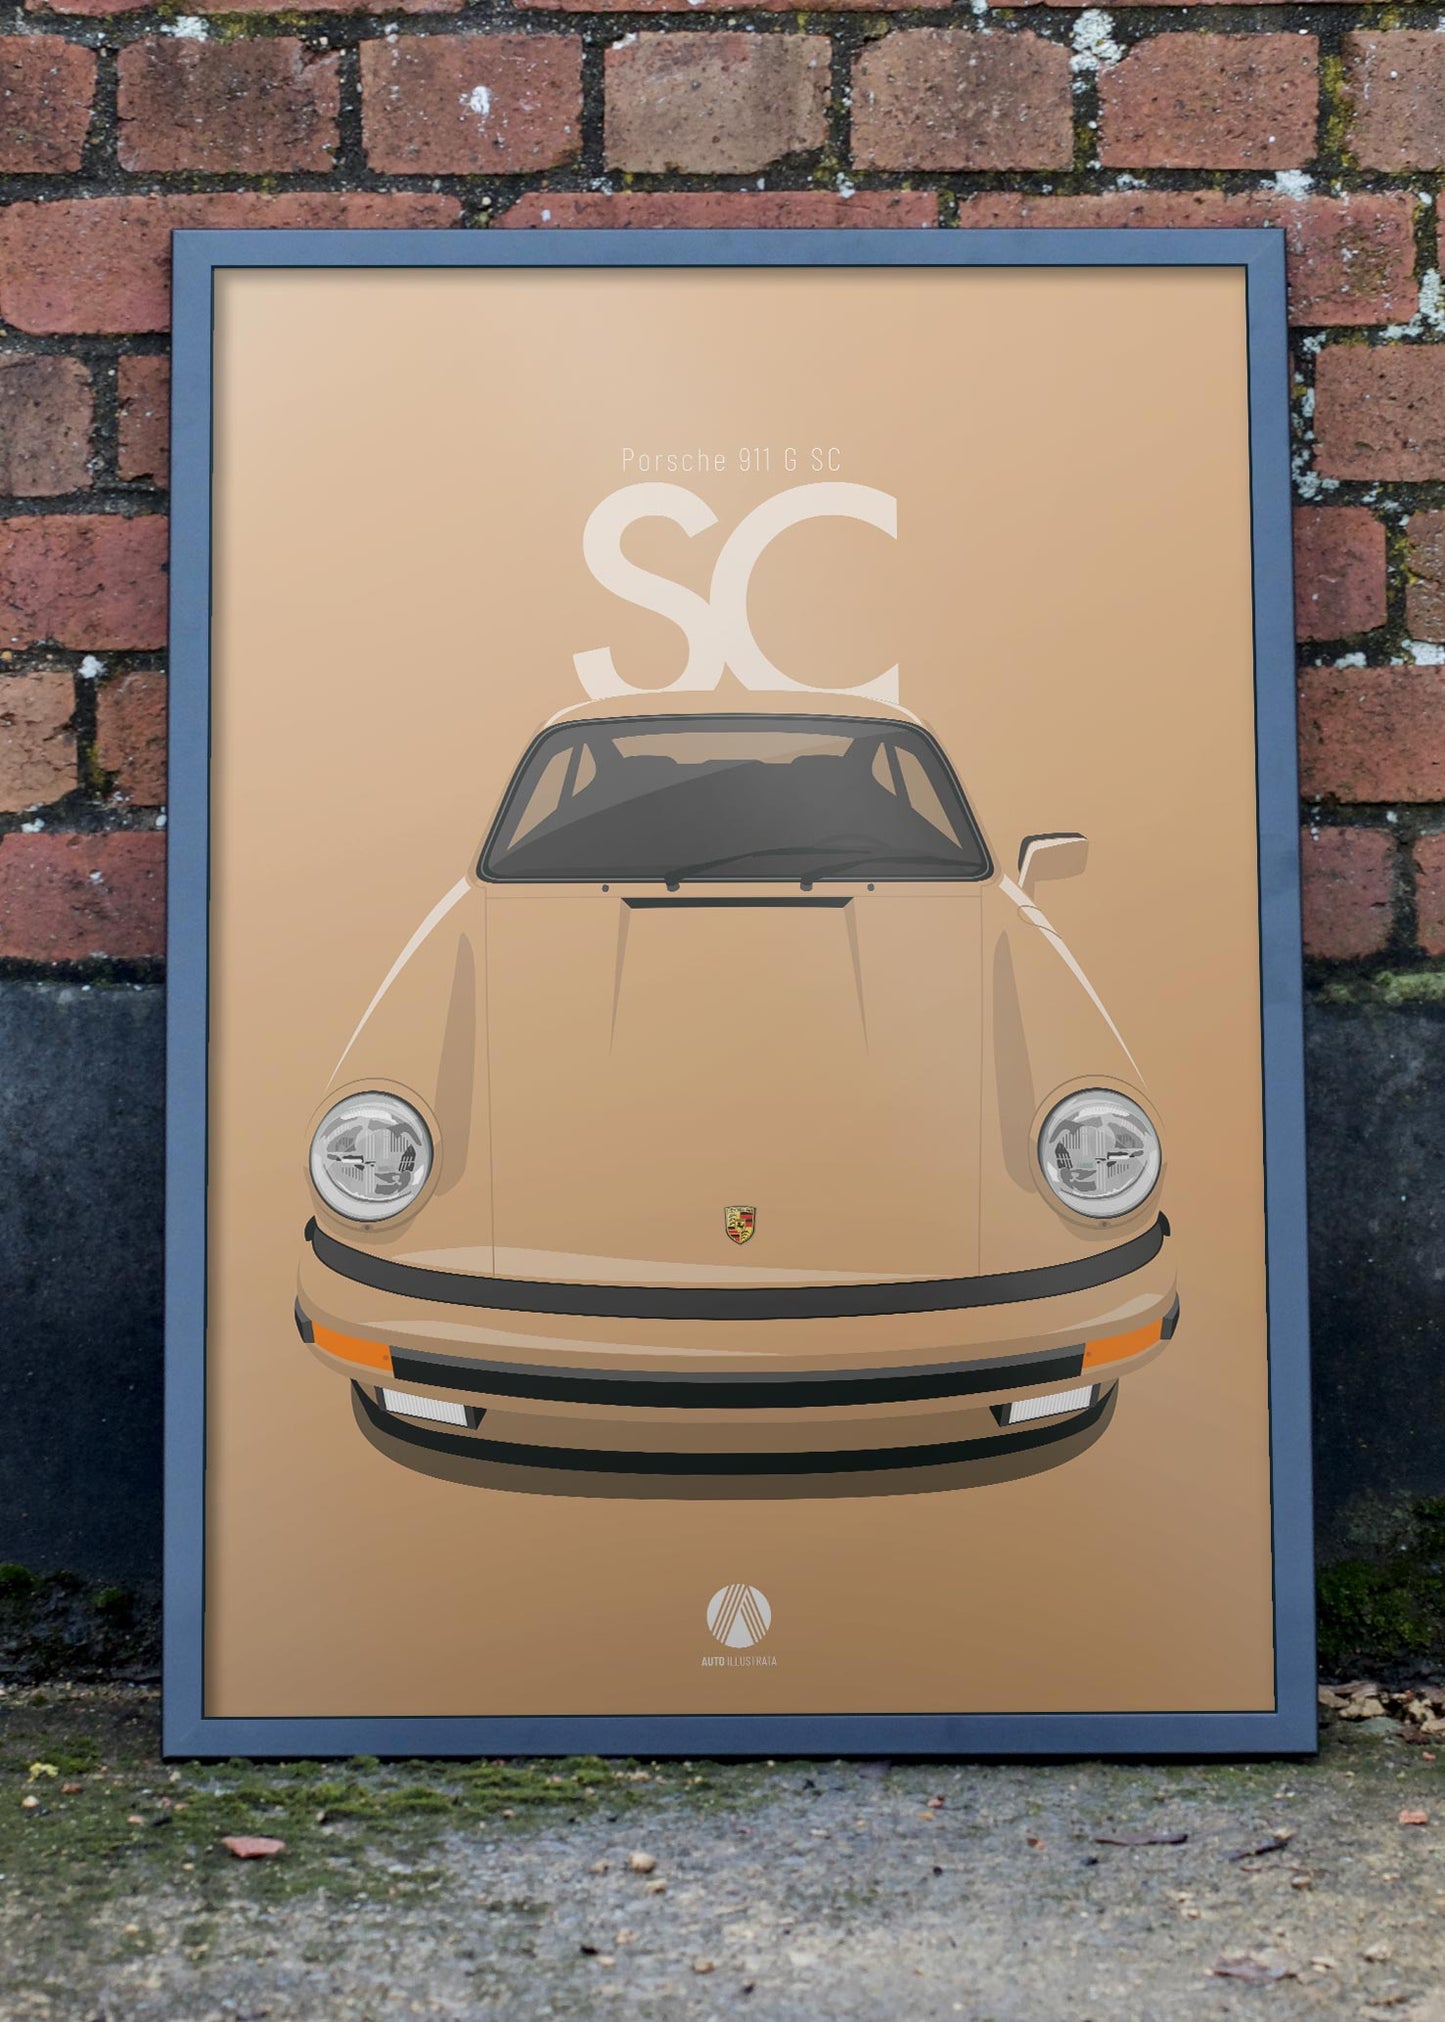 1978 Porsche 911 SC - 502 Kaschmirbeige - poster print